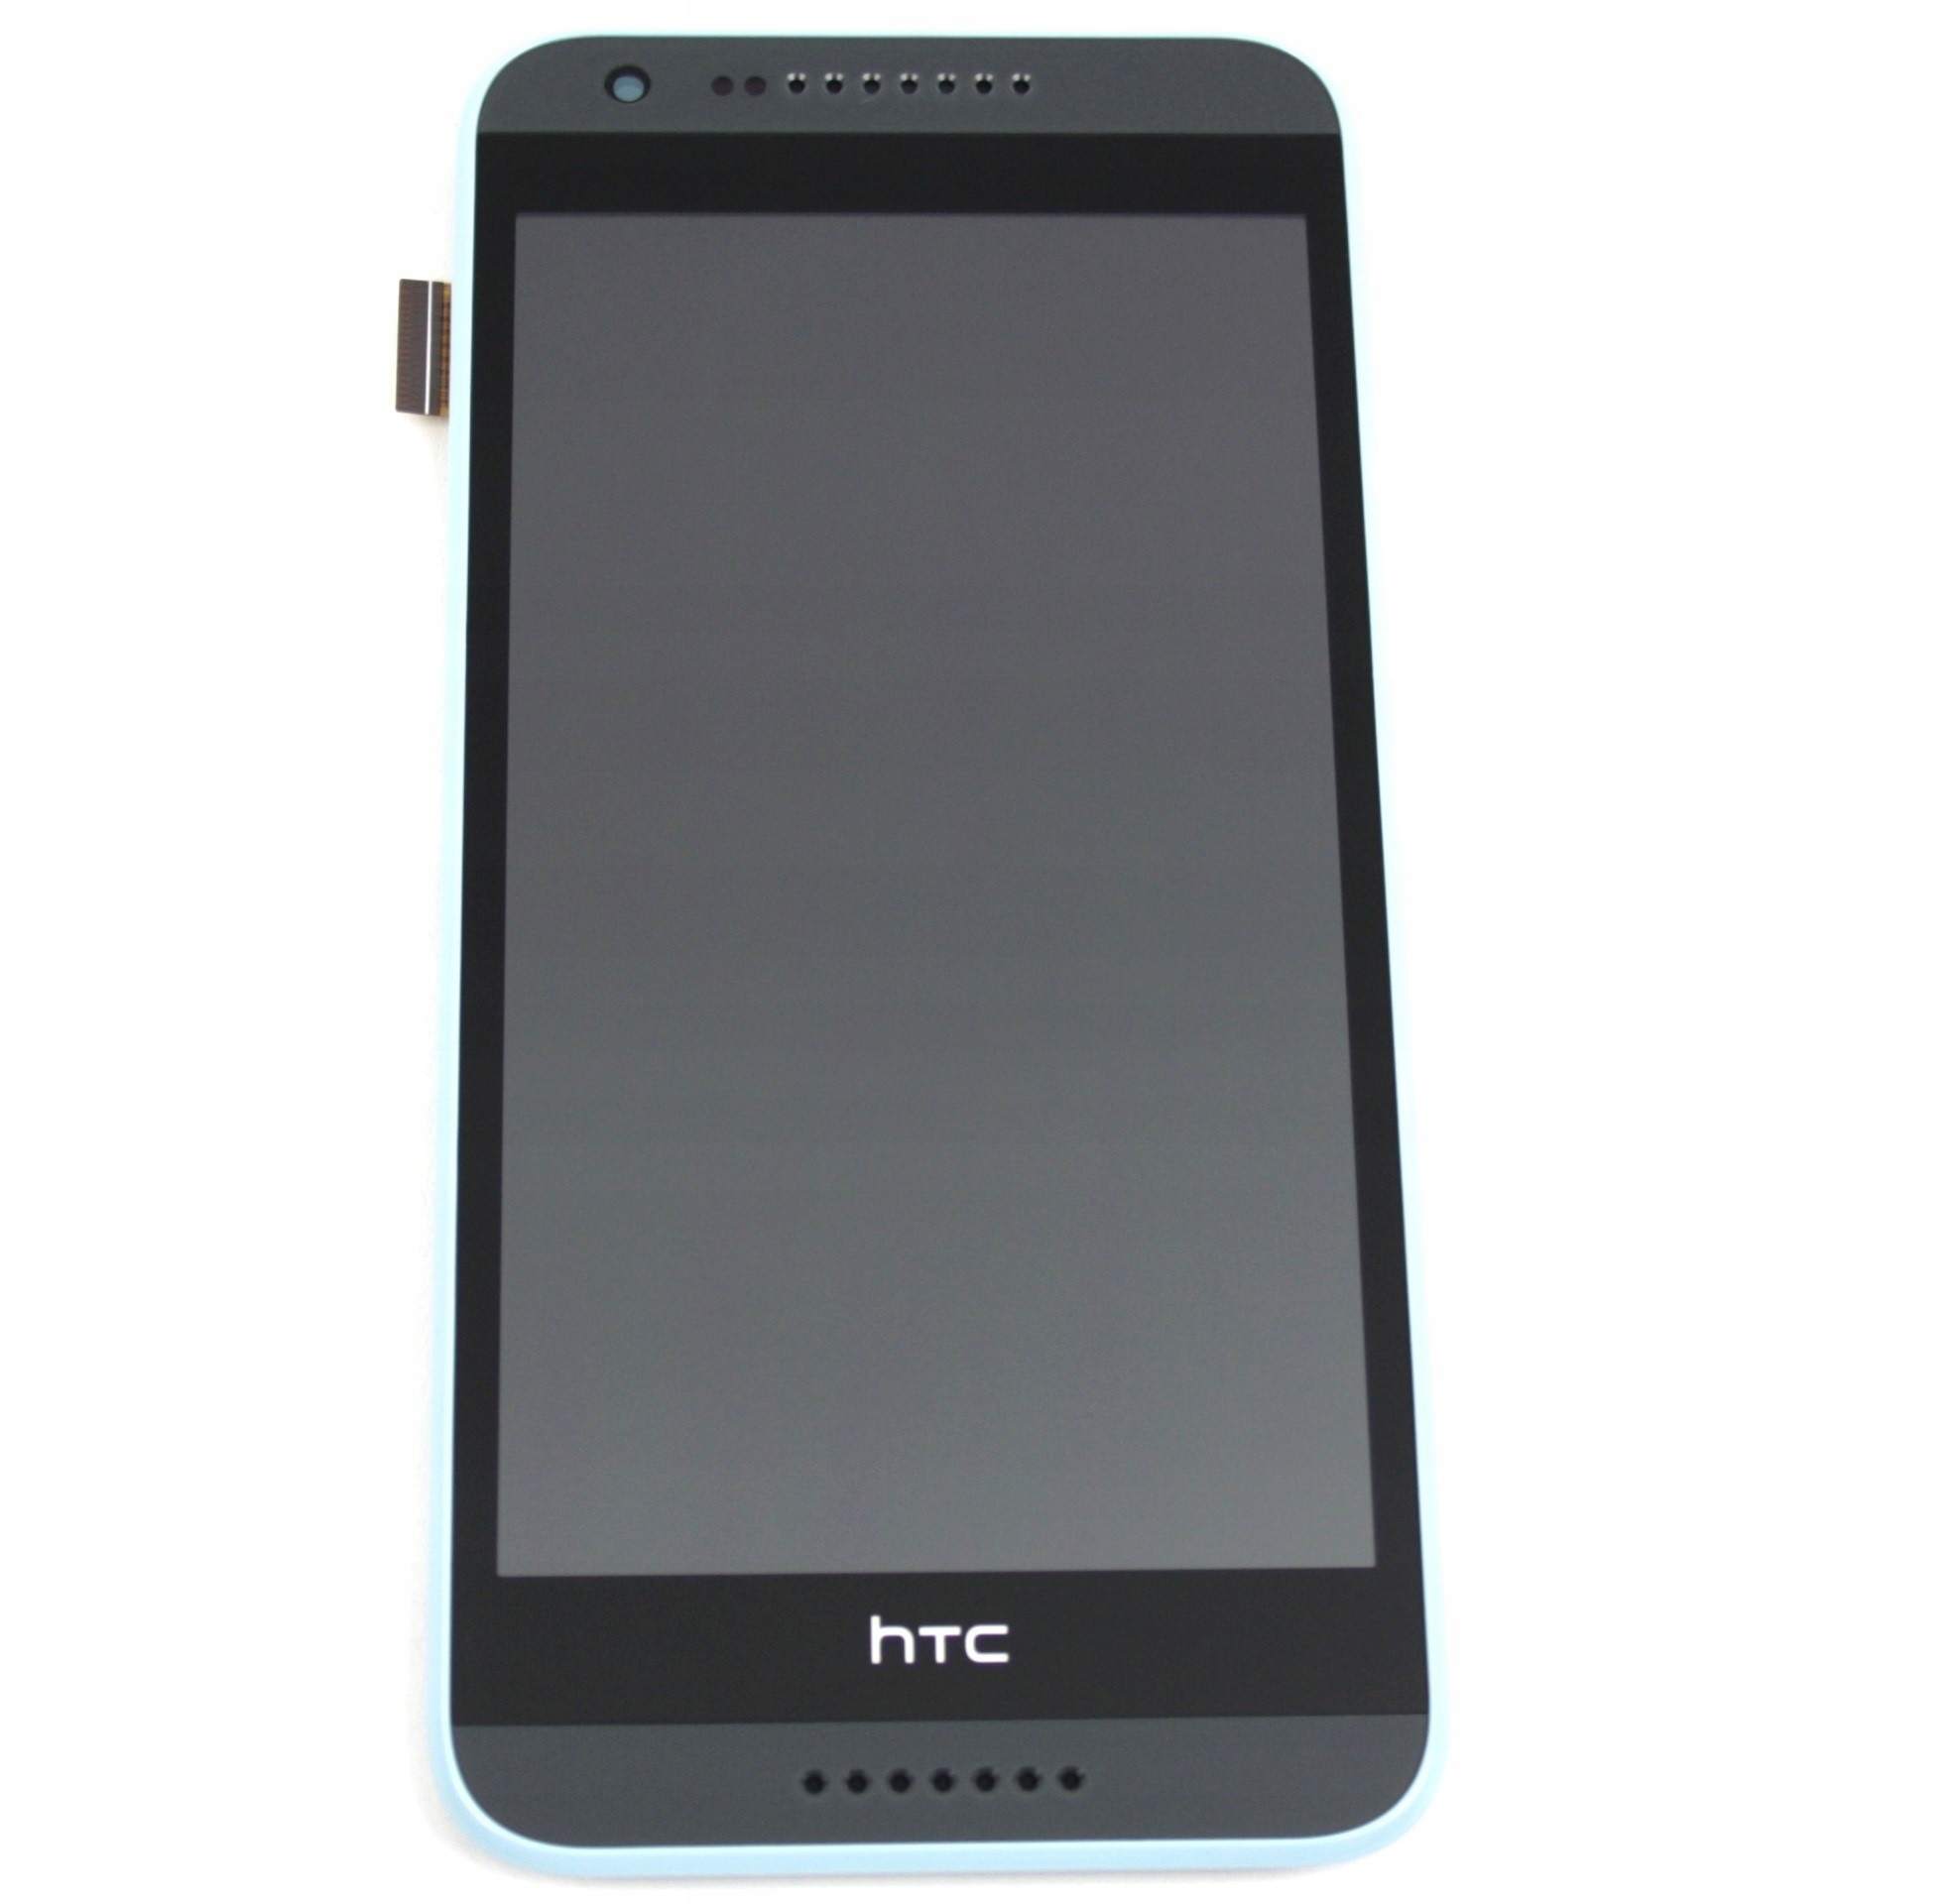 WYŚWIETLACZ Z DIGITIZEREM HTC DESIRE 620 SZARY NIEBIESKA RAMKA - Wyświetlacze z digitizerami do telefonów